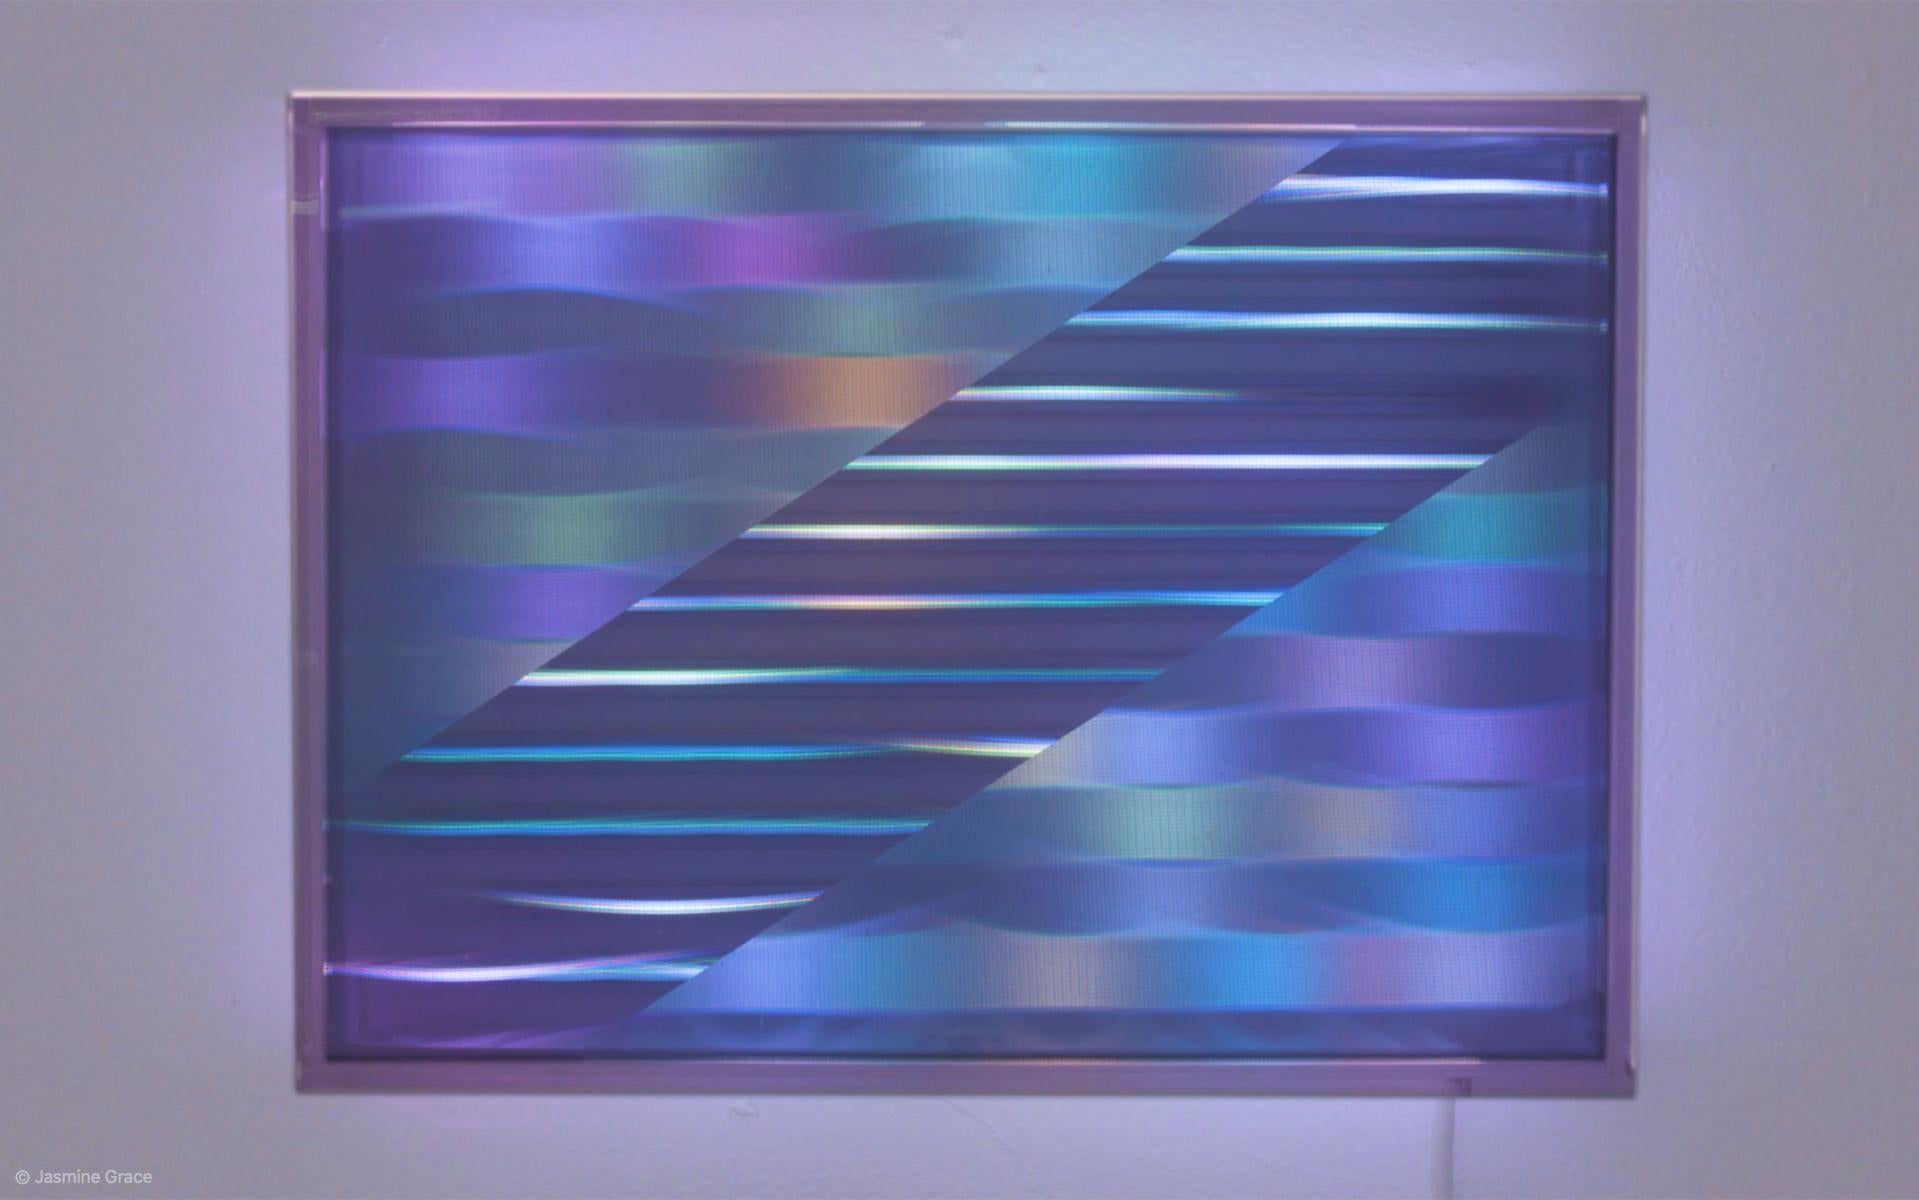 Künstler-Kommentar:
Limitierte Lentikular-LED-Wandkunst in einem rechteckigen Rahmen. Erstellt mit ständig wechselnden Mustern und Farbpaletten. Lentikulare Schichten verursachen visuelle 3D-Verschiebungen und Veränderungen aus verschiedenen